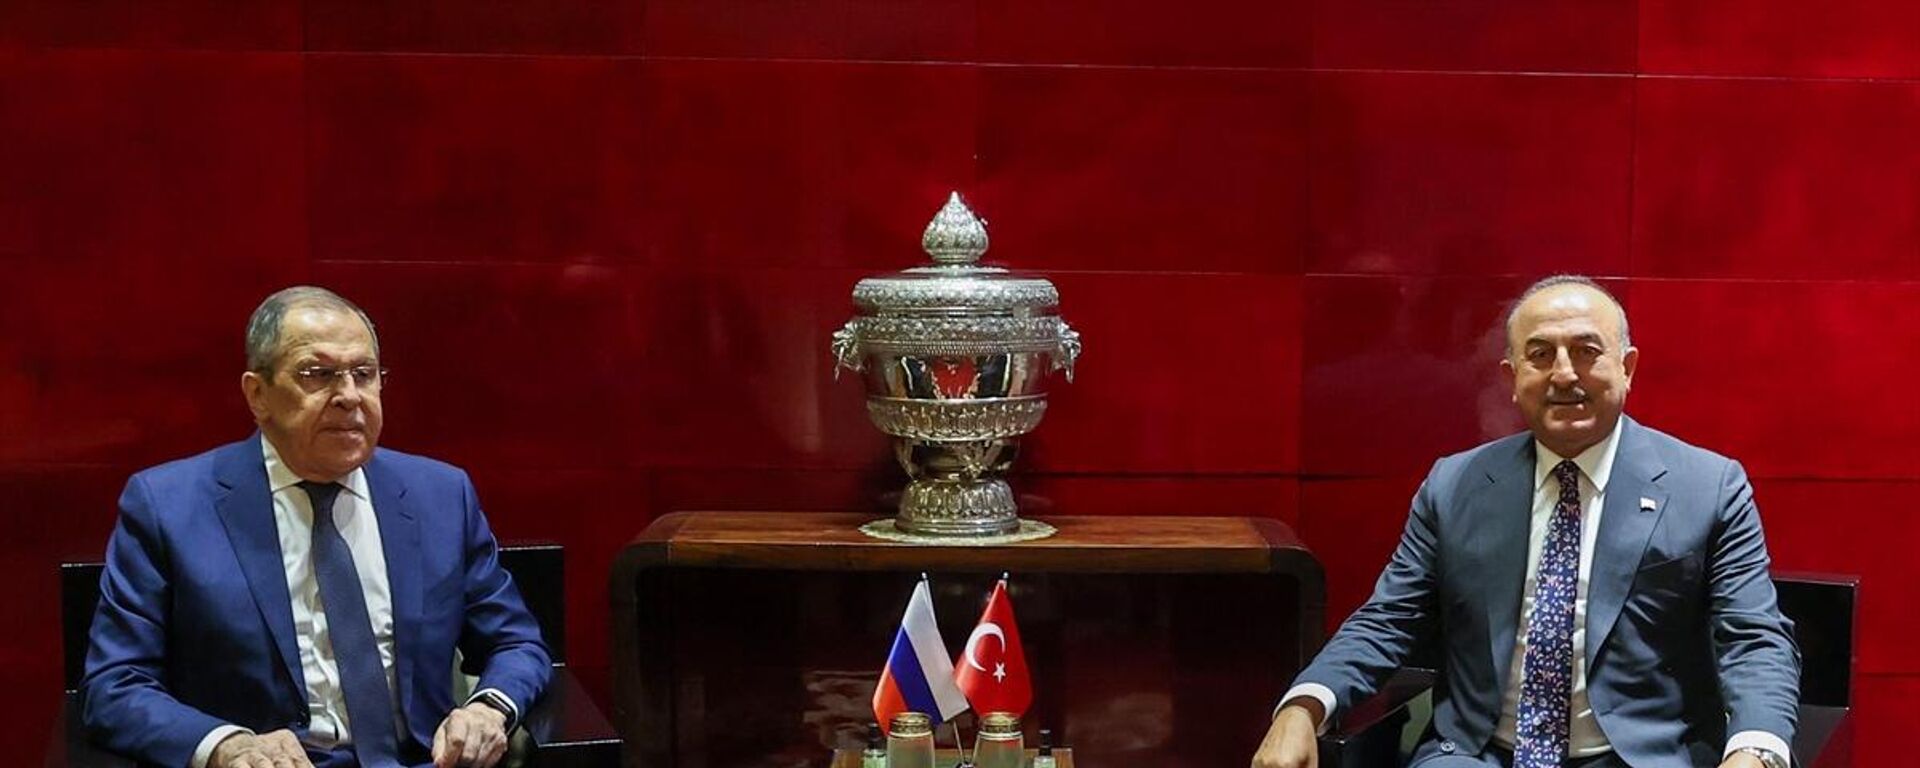 Türkiye Dışişleri Bakanı Mevlüt Çavuşoğlu ile Rusya  Dışişleri Bakanı Sergey Lavrov, Türkiye-Güneydoğu Asya Uluslar Birliği (ASEAN) Dördüncü Sektörel Diyalog Ortaklığı Üçlü Toplantısı'na katılmak için gittiği Kamboçya'nın başkenti Punom Pen'de bir araya geldi. - Sputnik Türkiye, 1920, 03.08.2022